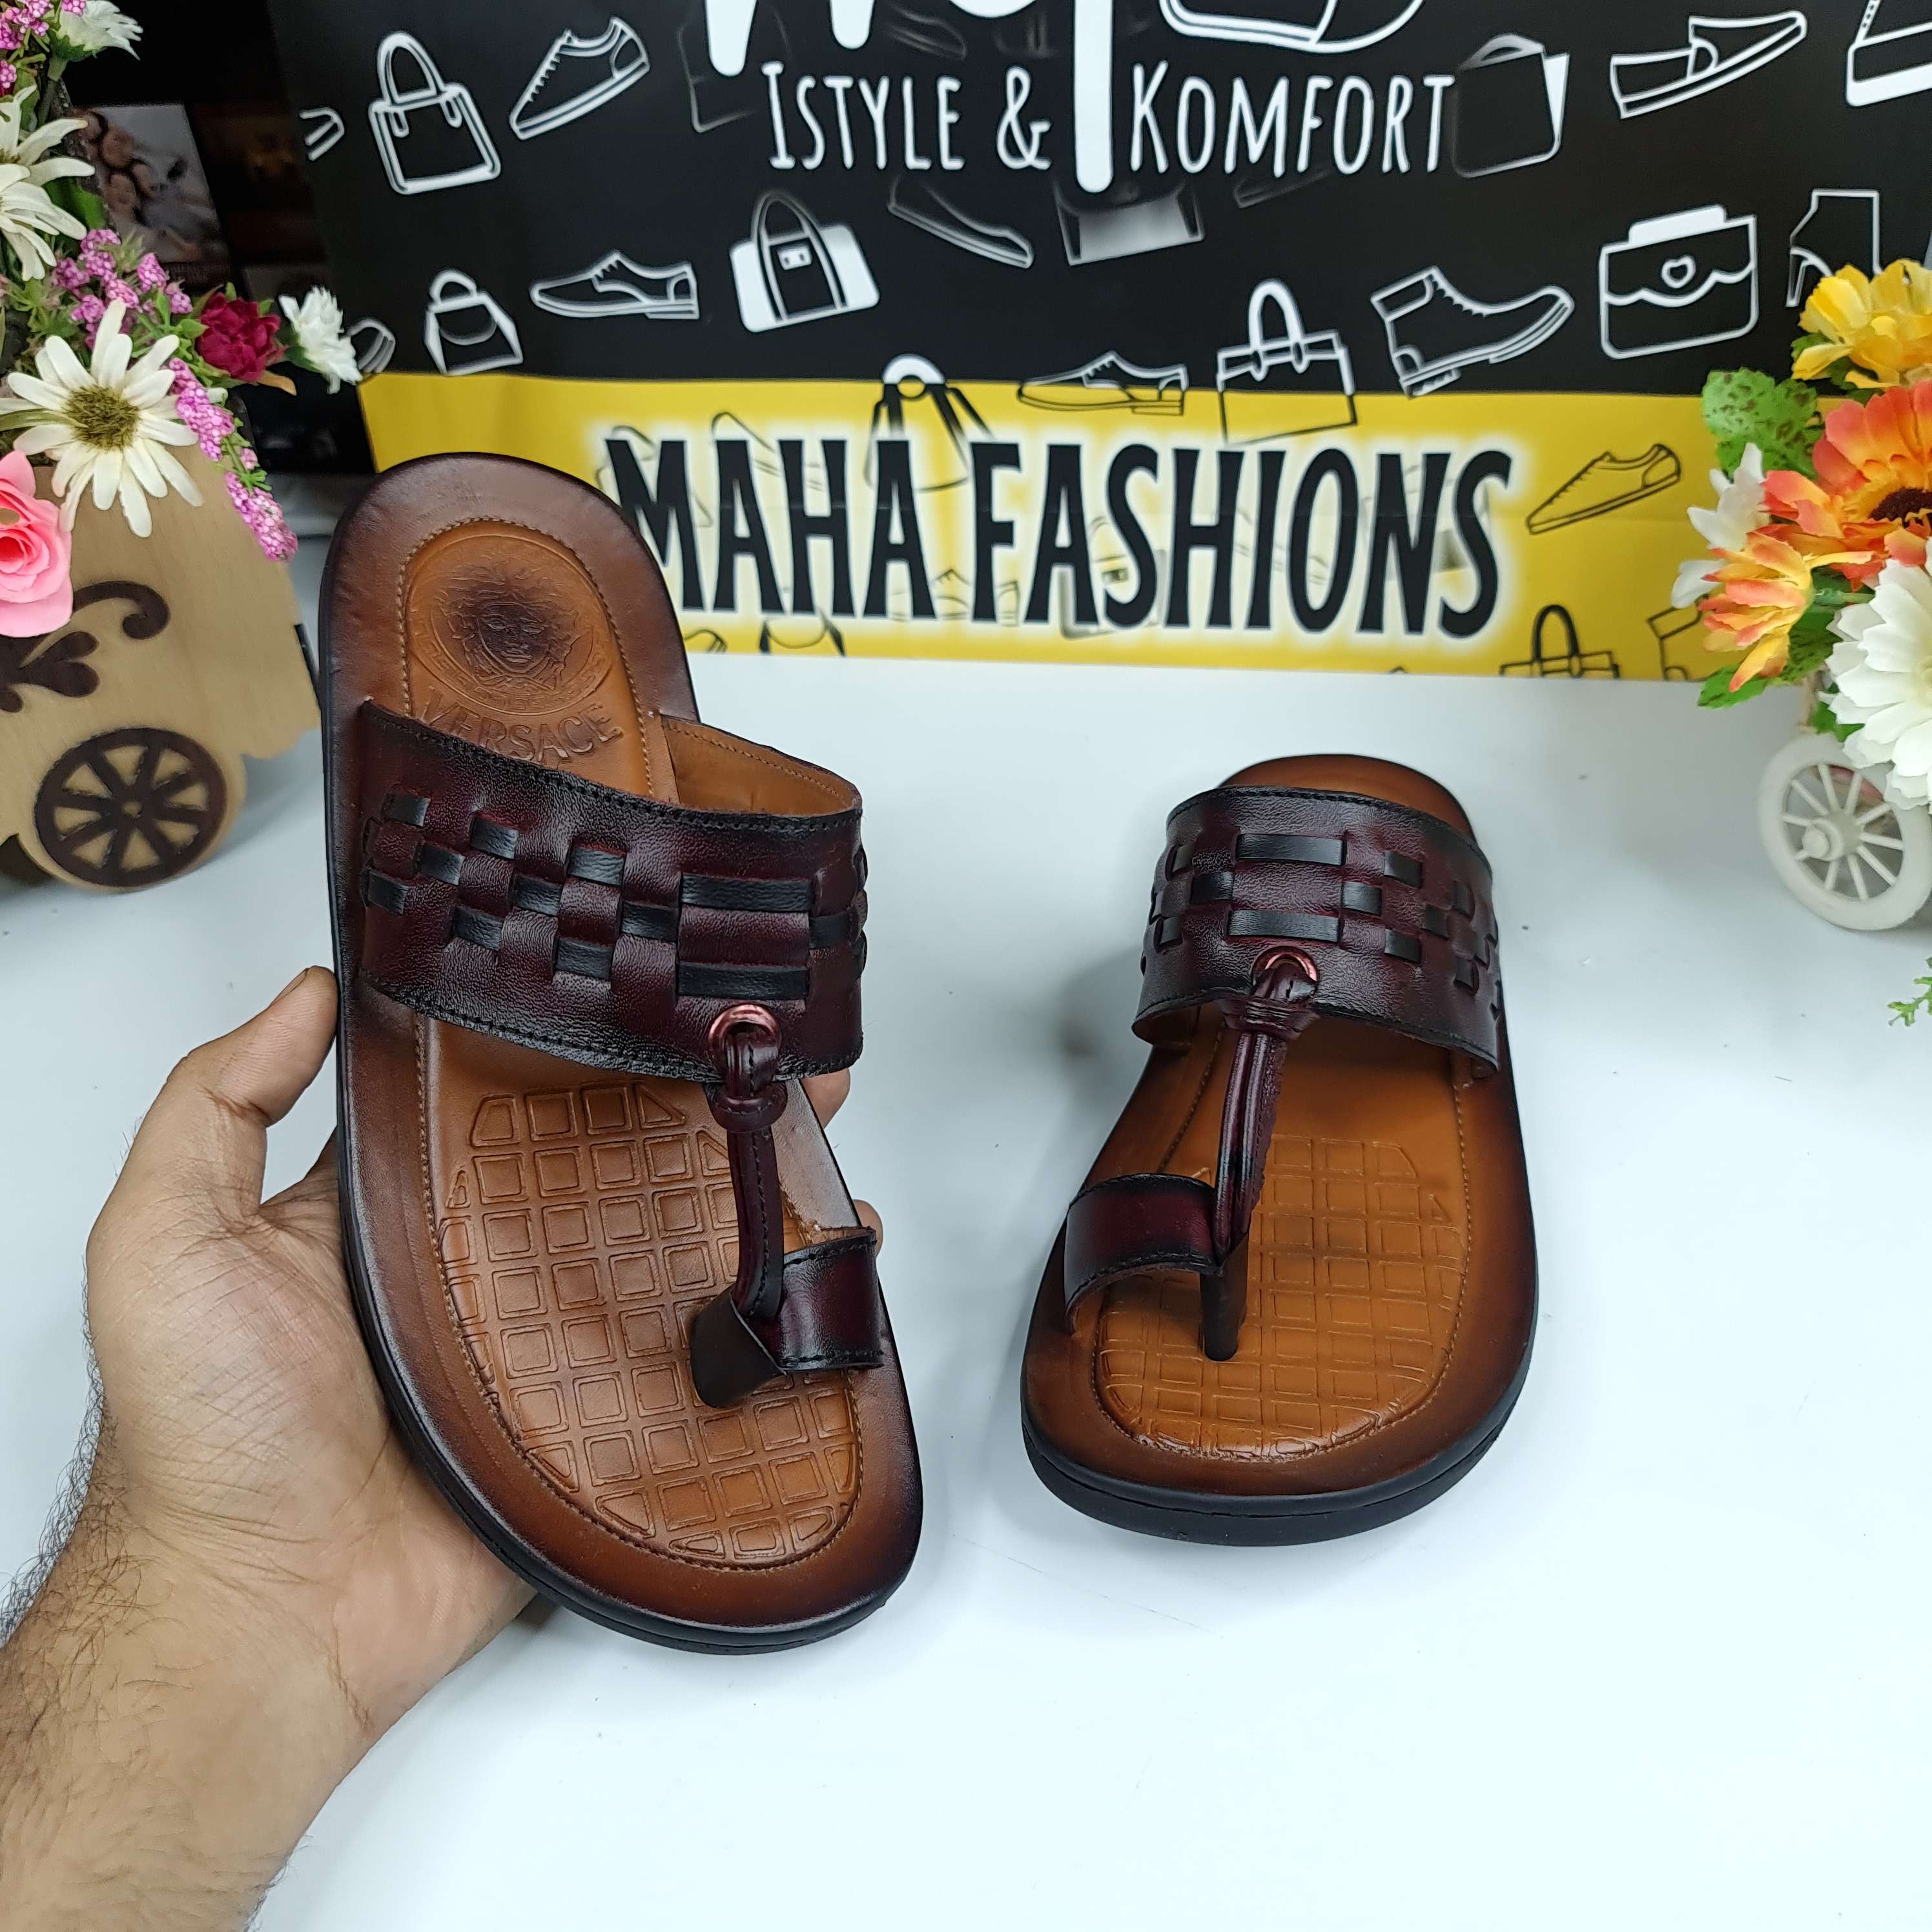 NDM-058 - Maha fashions -  